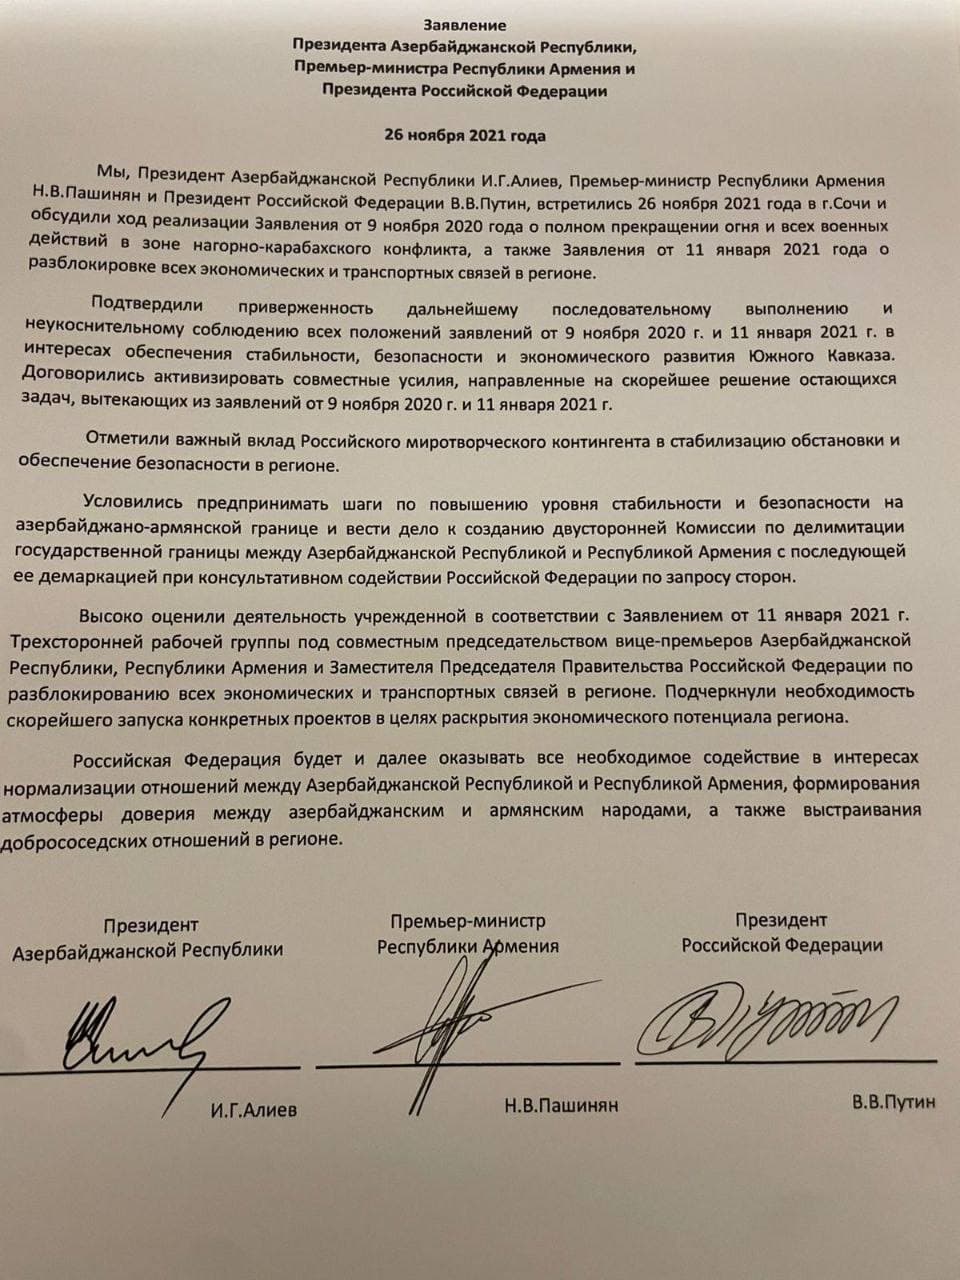 Заявление Путина, Алиева и Пашиняна